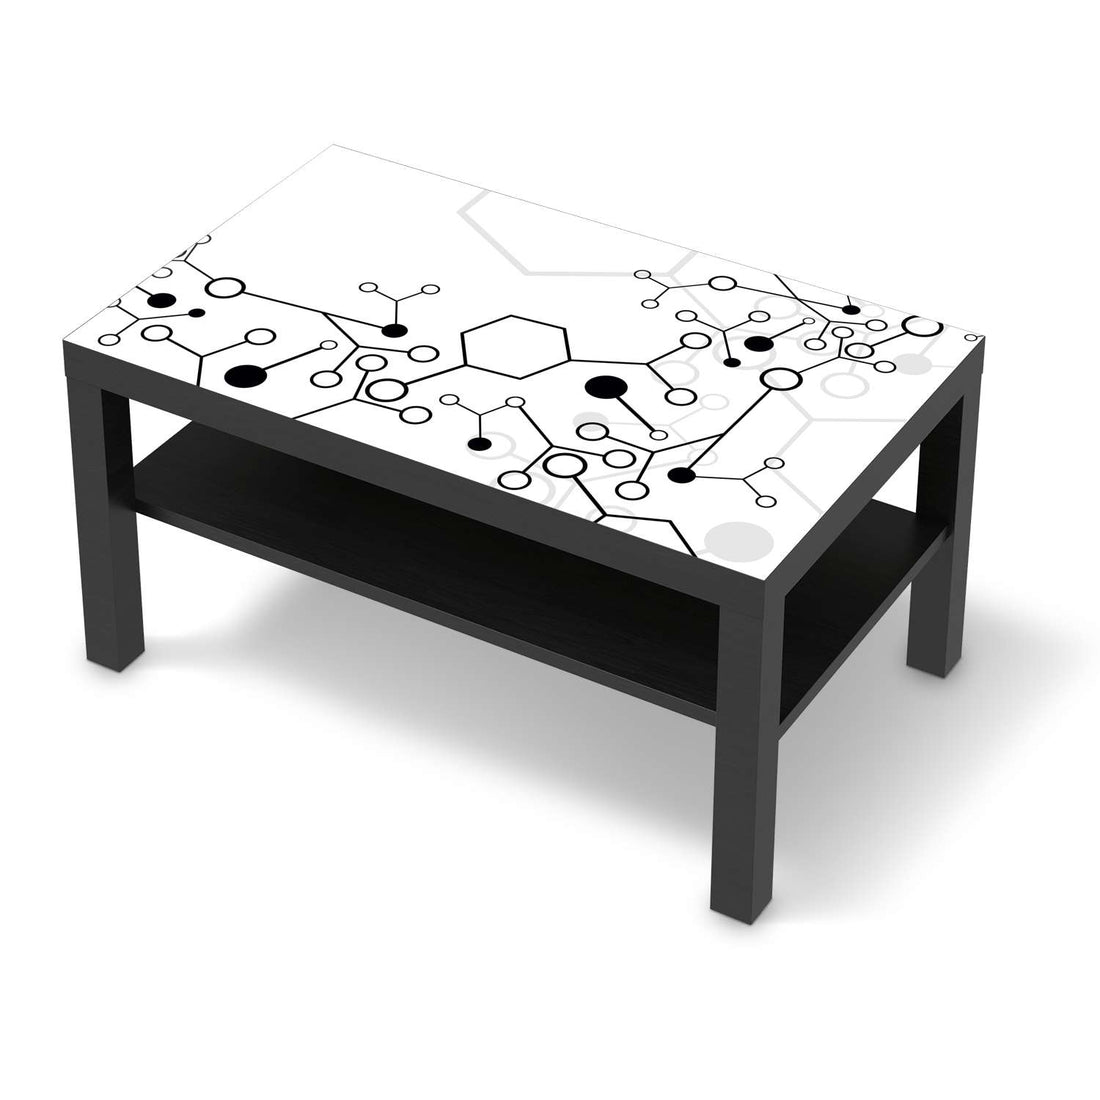 Möbelfolie Atomic 1 - IKEA Lack Tisch 90x55 cm - schwarz